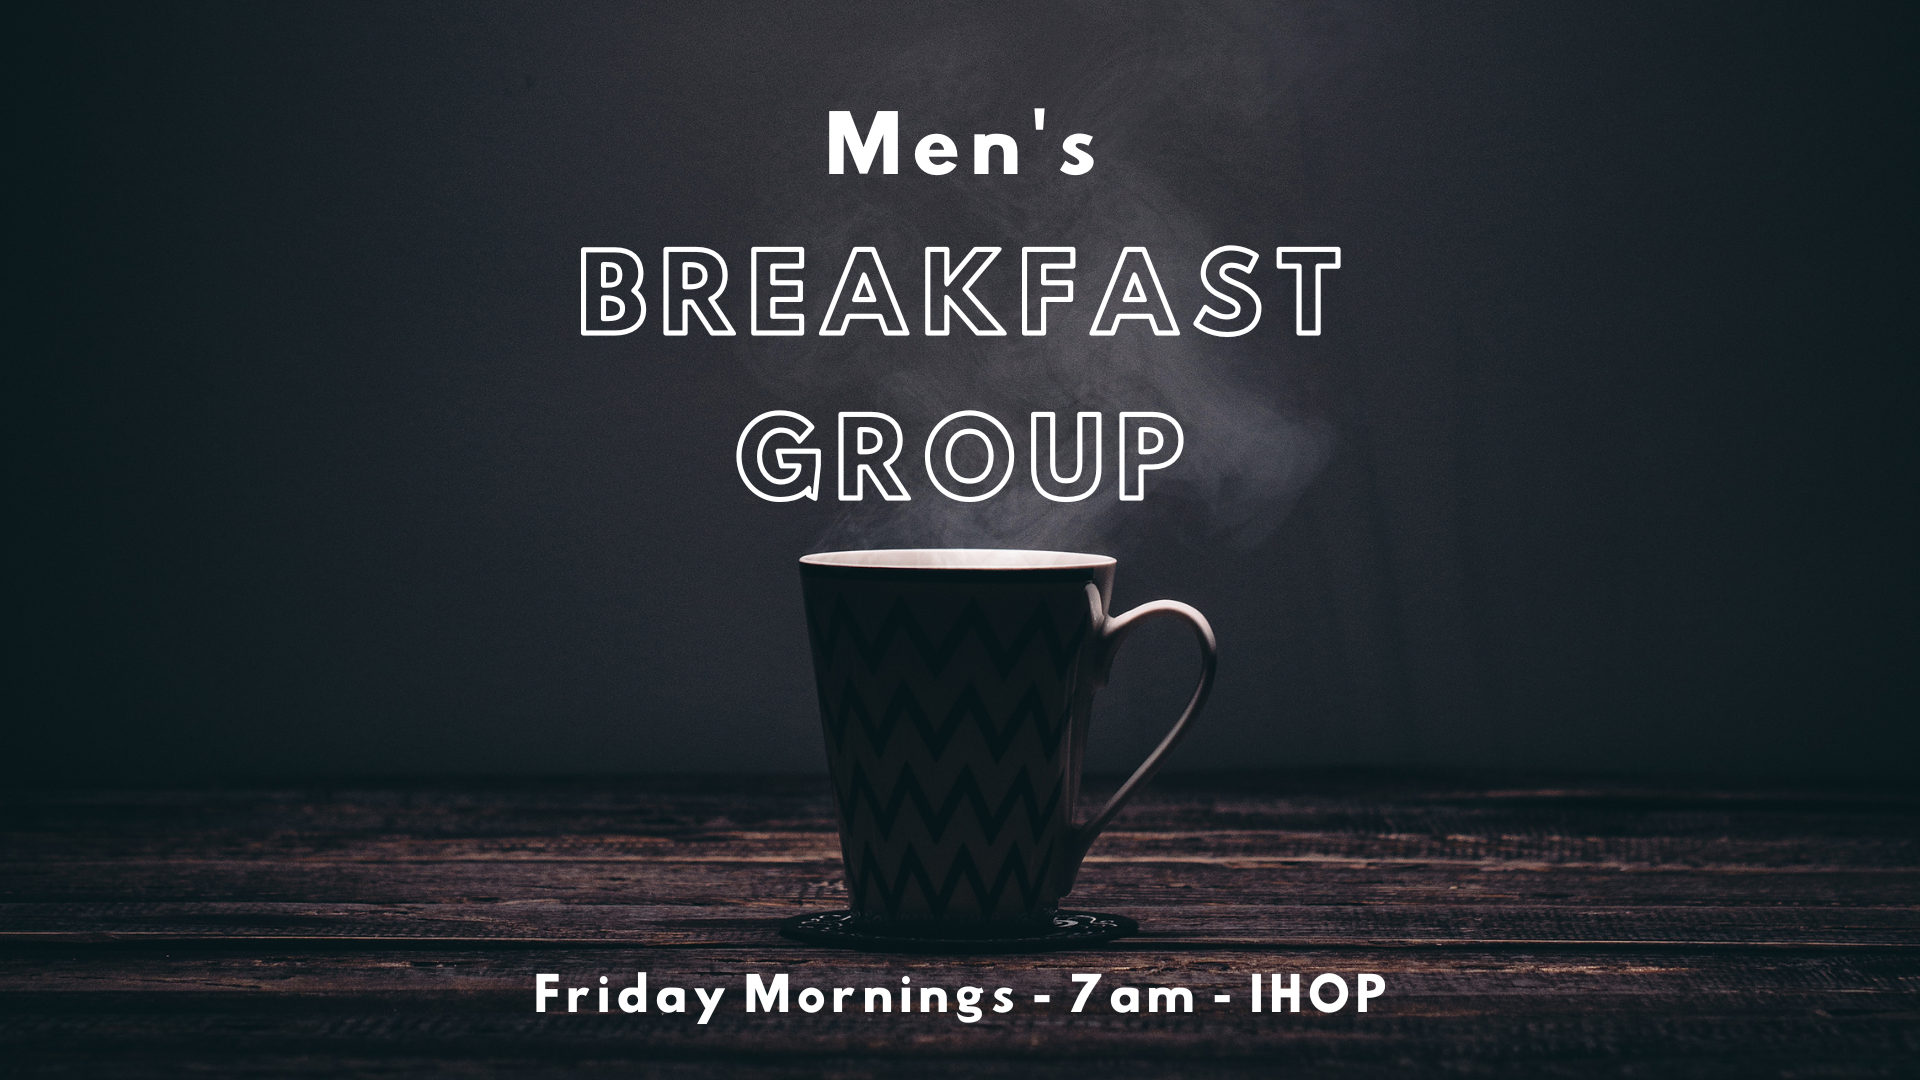 Men's Breakfast Group (1920 × 1080 px)